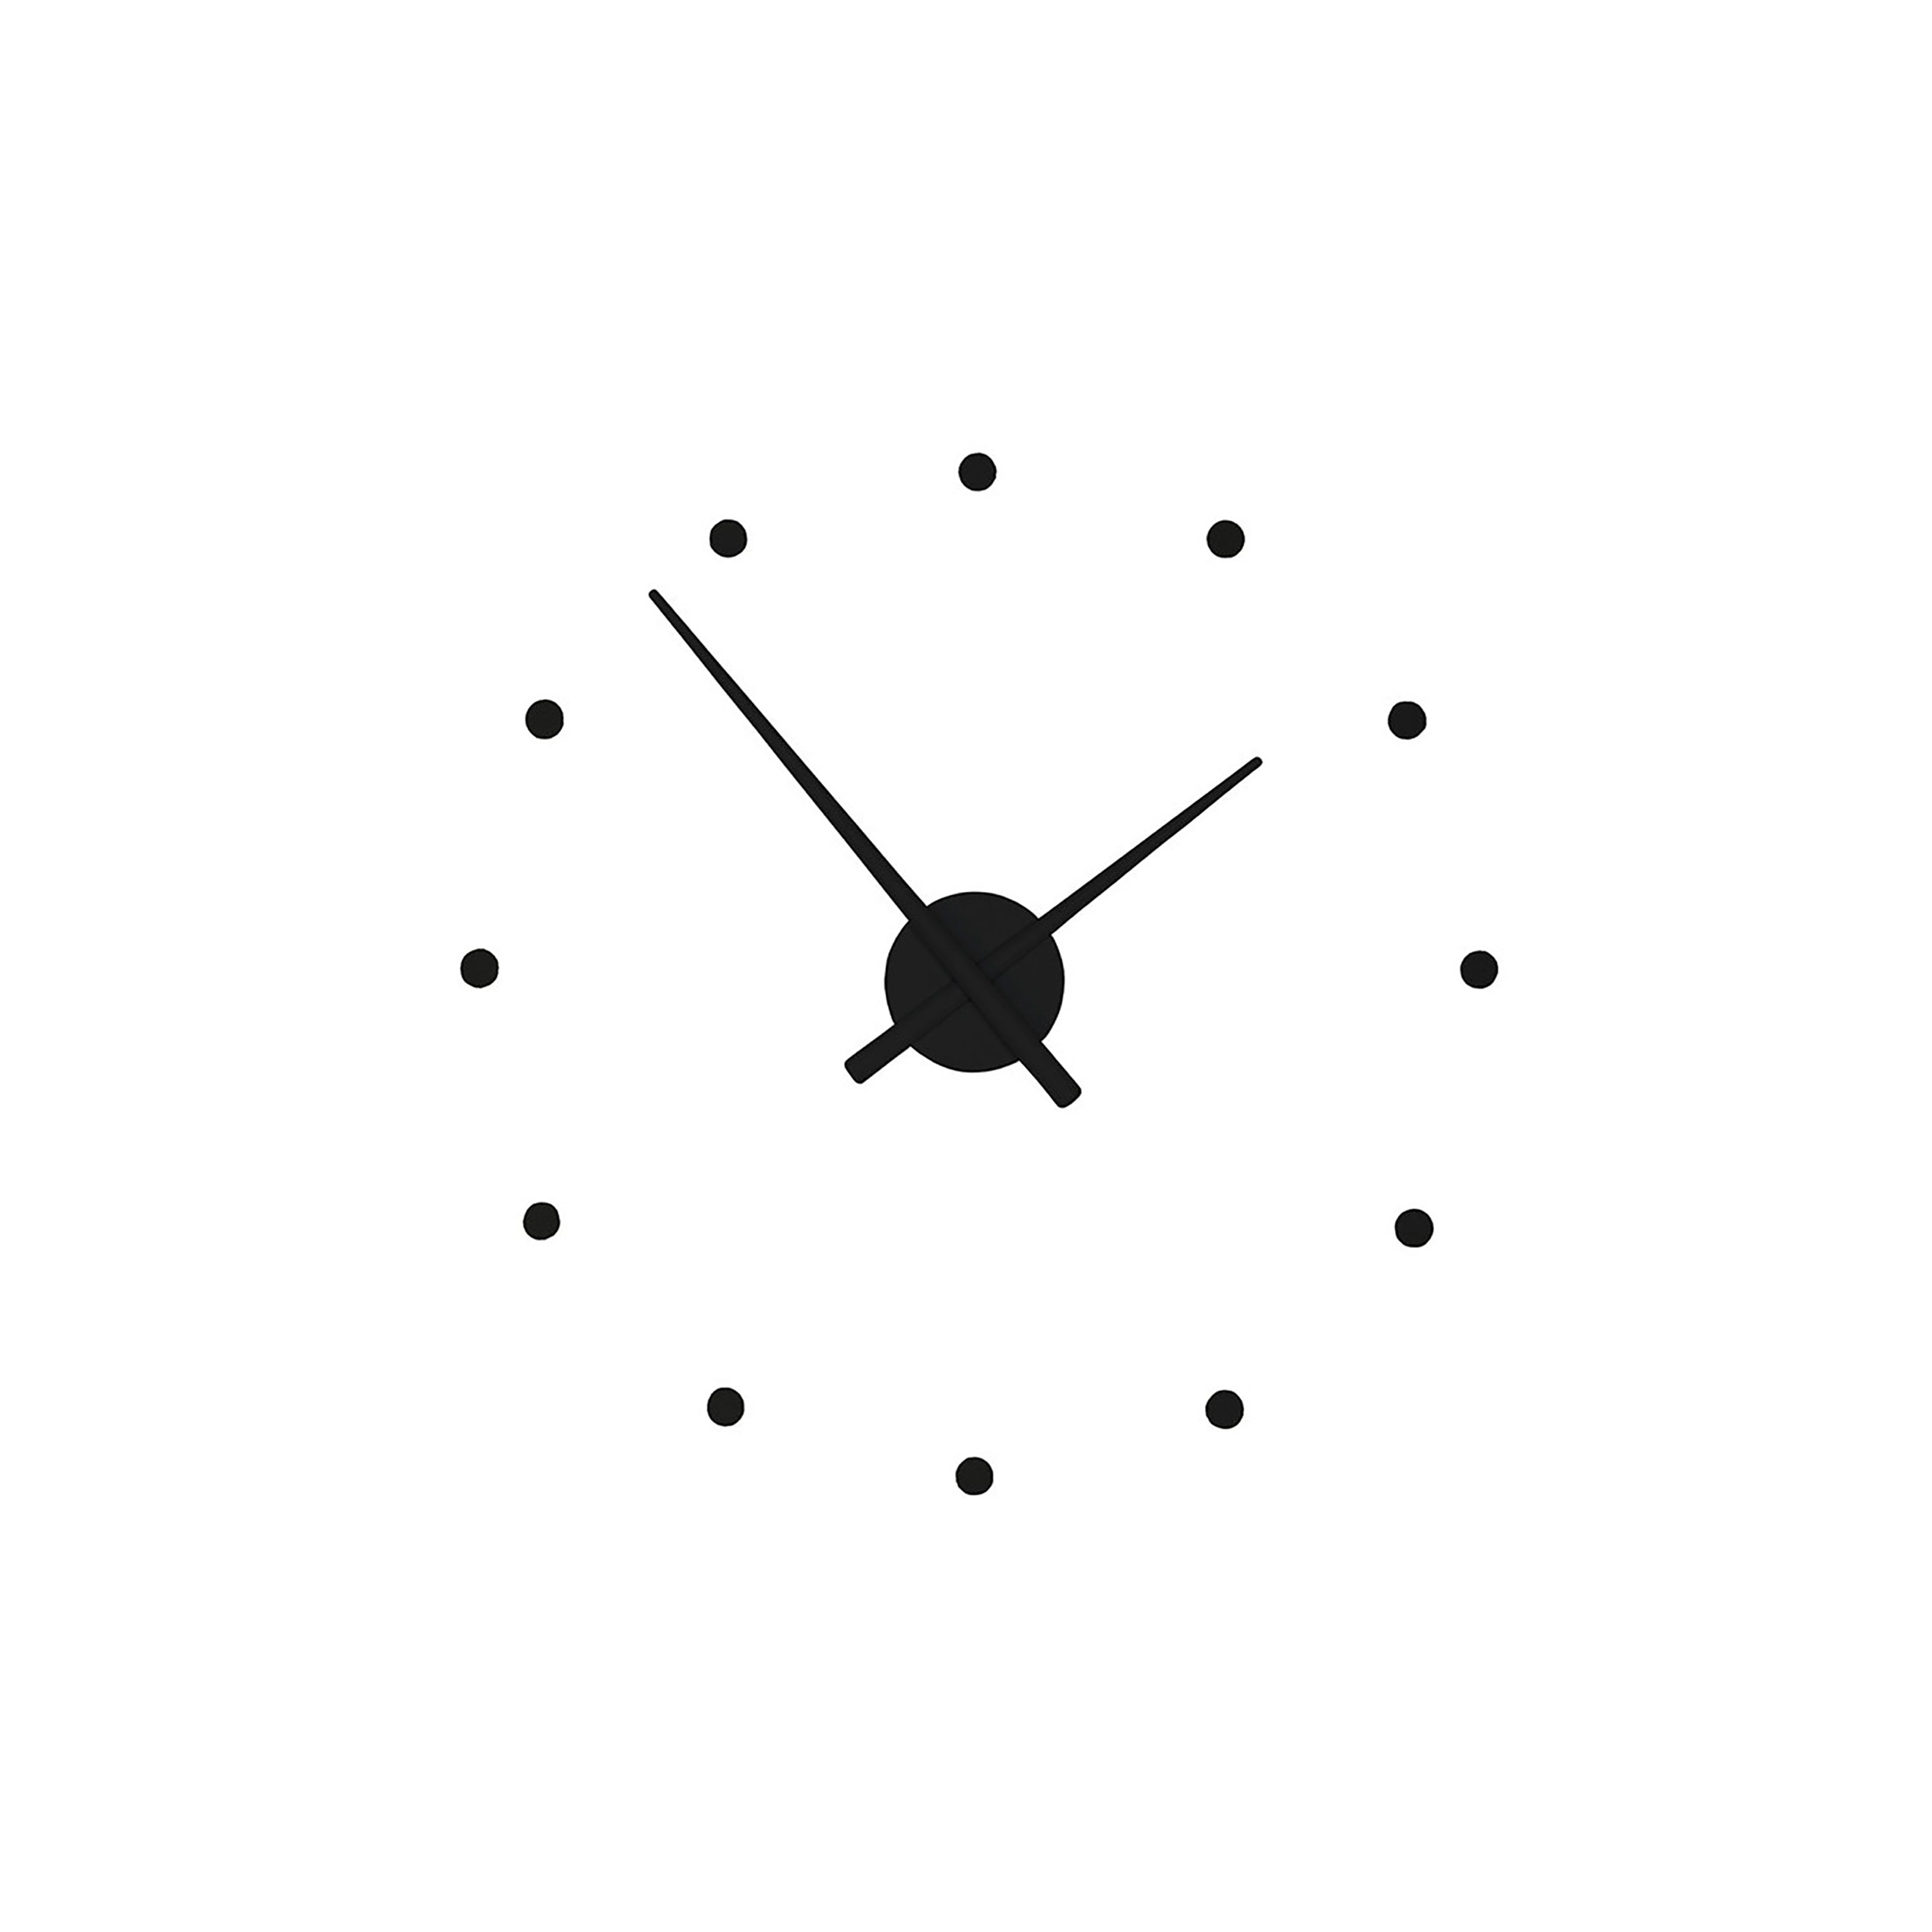 OJ Wall Clock: Small - 19.7